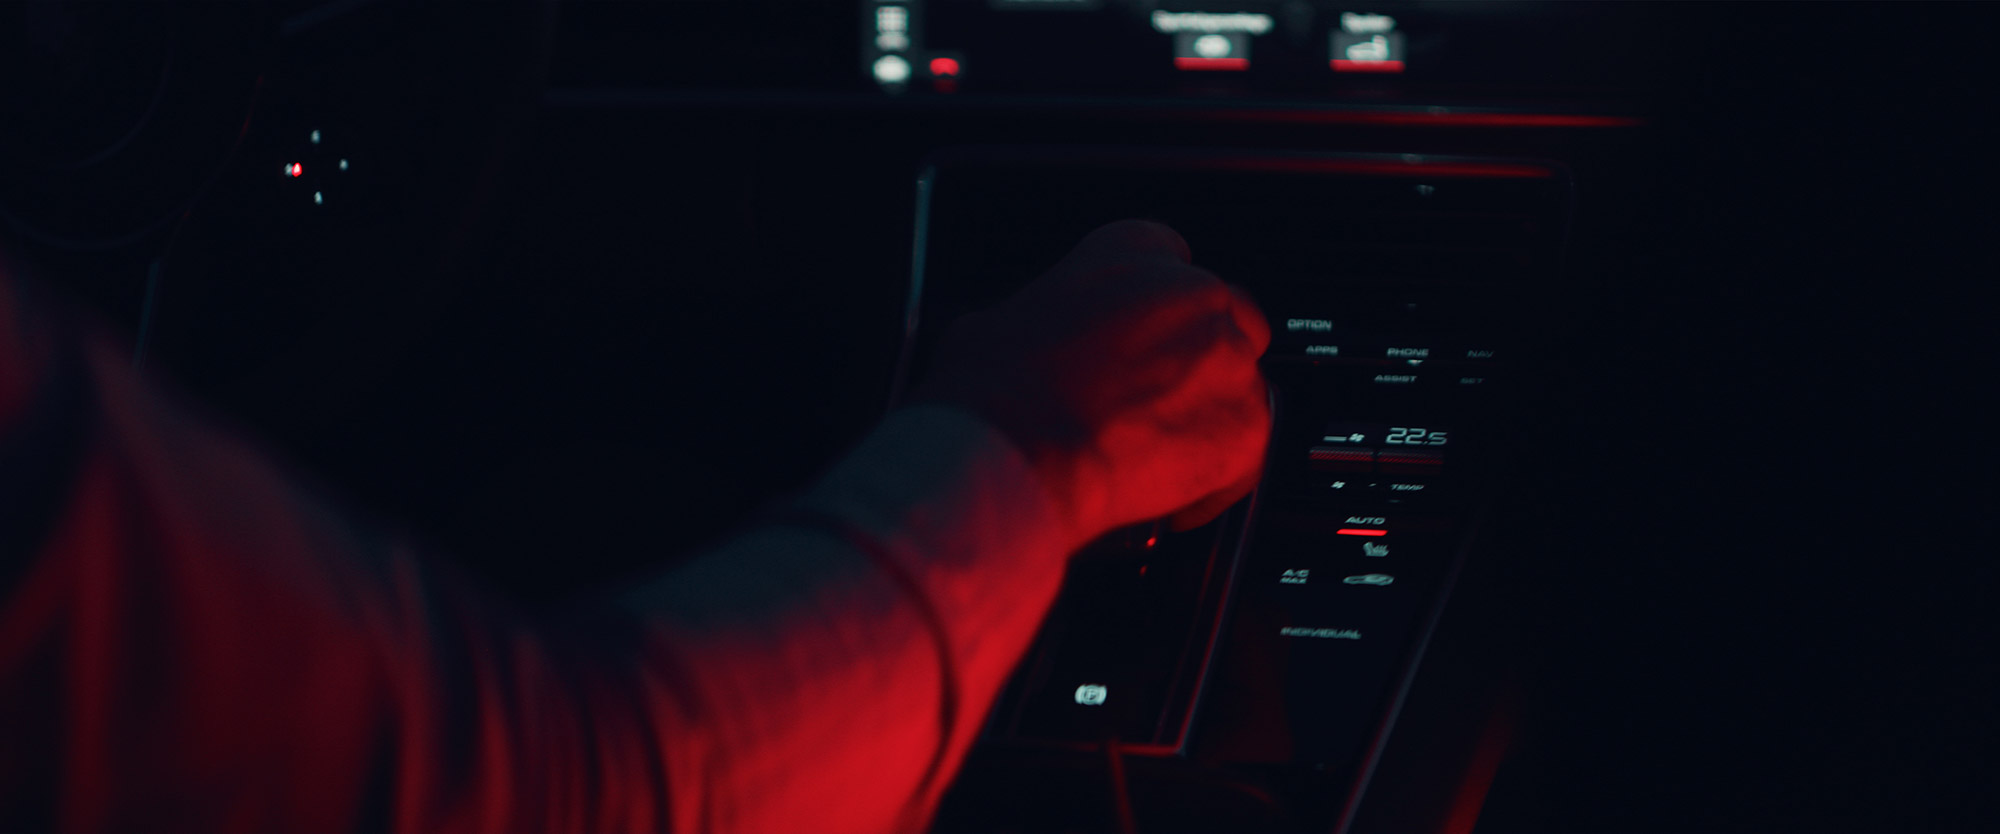 Porsche Panamera E-Hybrid Werbefilm Filmproduktion in Augsburg Interior rot geleuchtet mit Astera Titan Tube